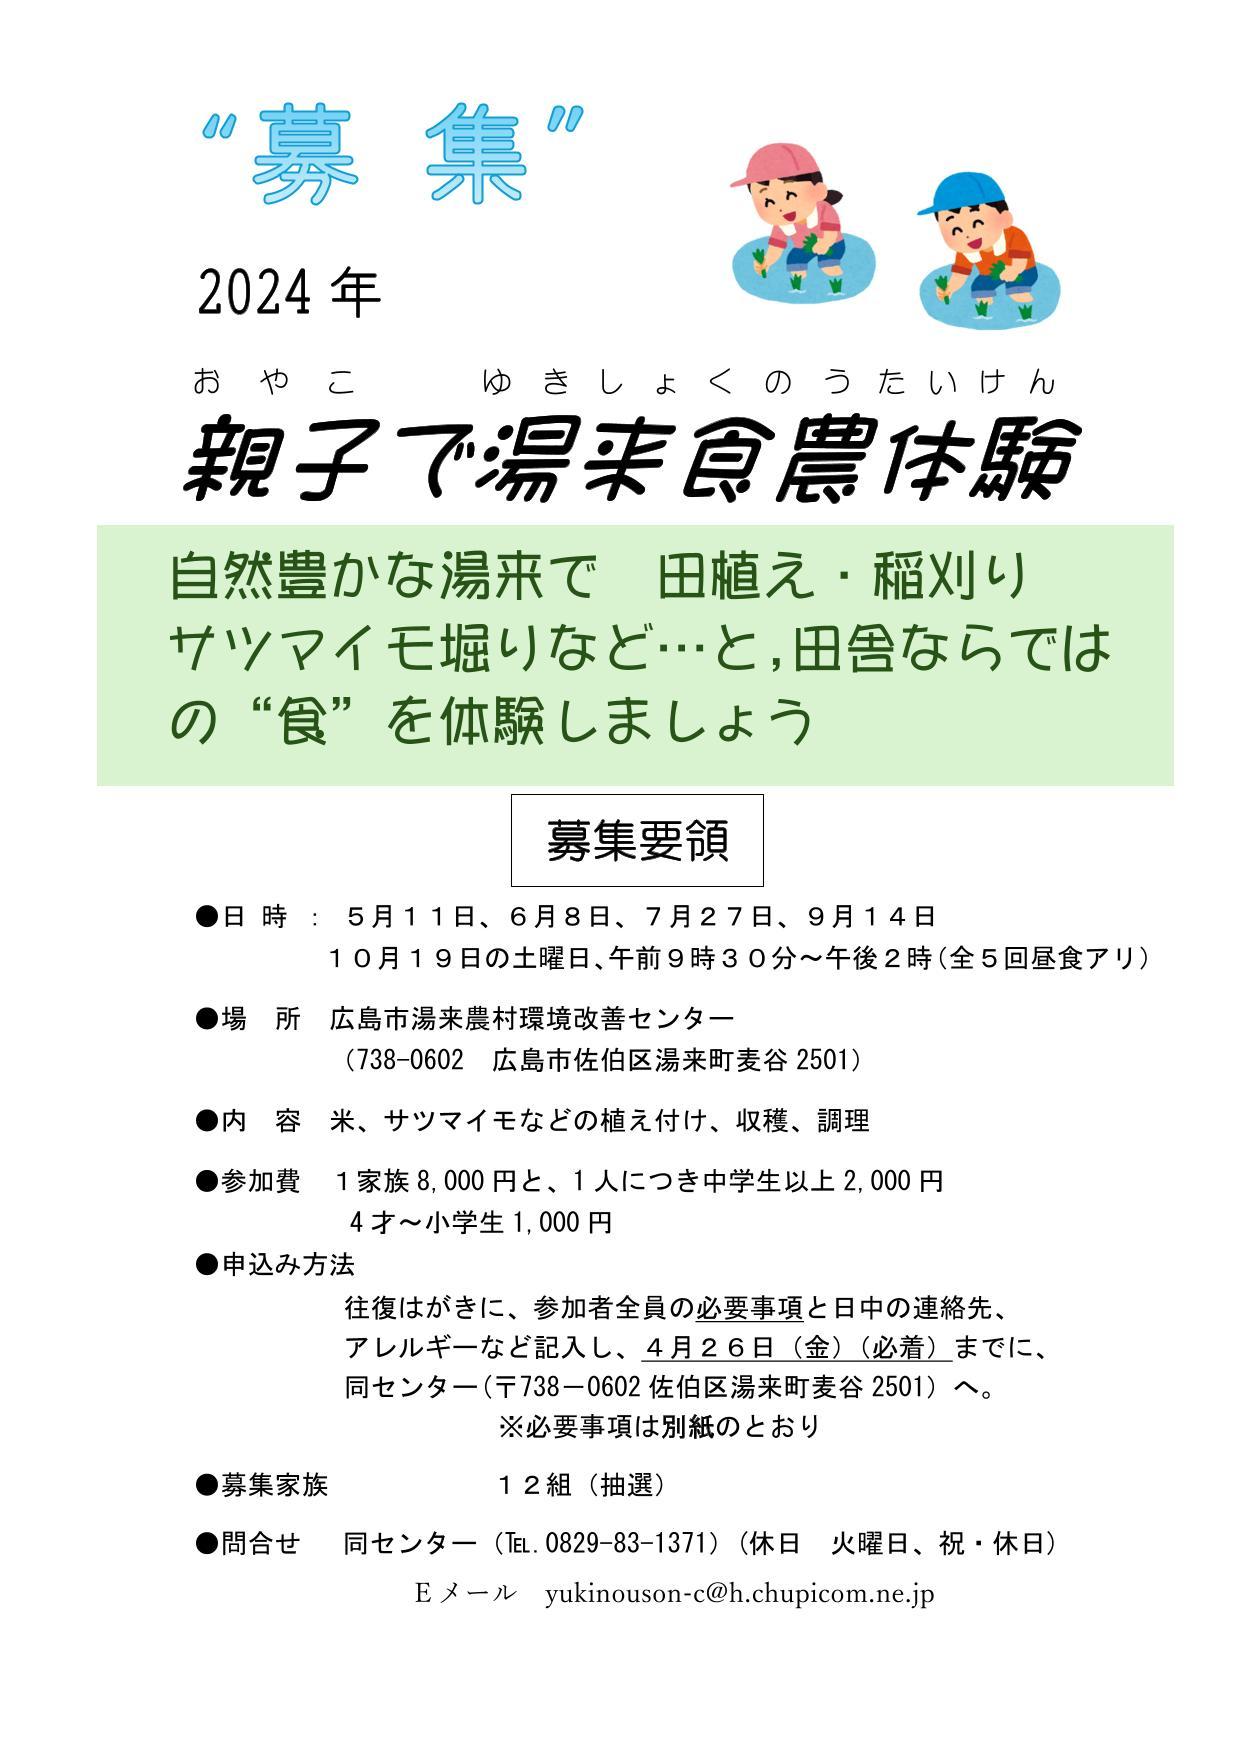 http://www.a-net.shimin.city.hiroshima.jp/anet/event/uploads/03390-/2f056407efa6d8a9808e194519e074d0_5.jpg